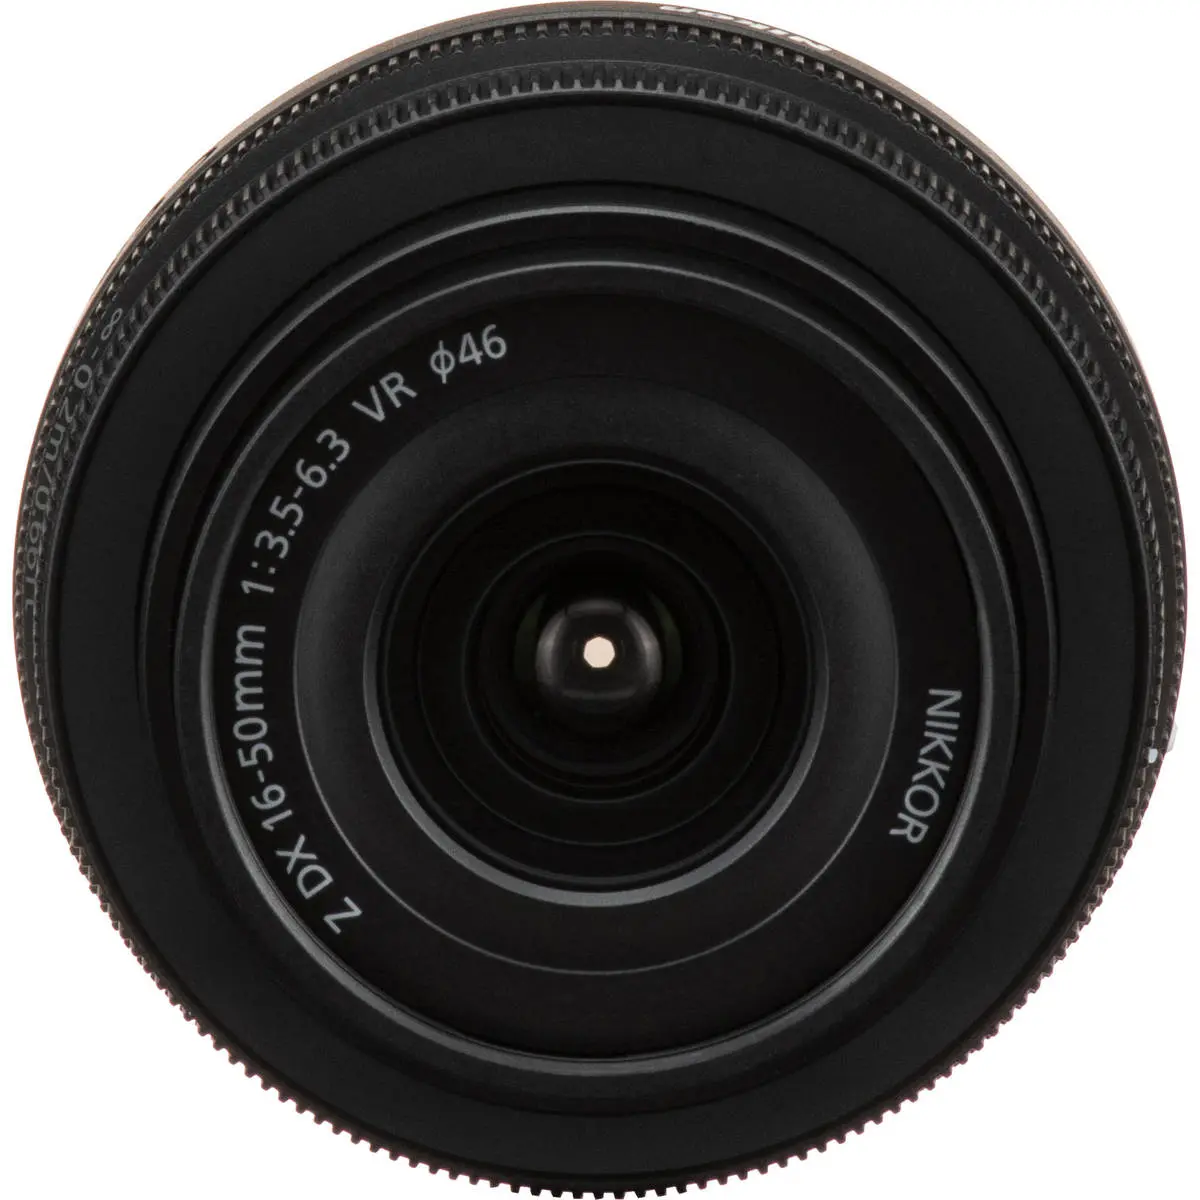 5. Nikon NIKKOR Z DX 16-50MM F/3.5-6.3 VR (kit lens)